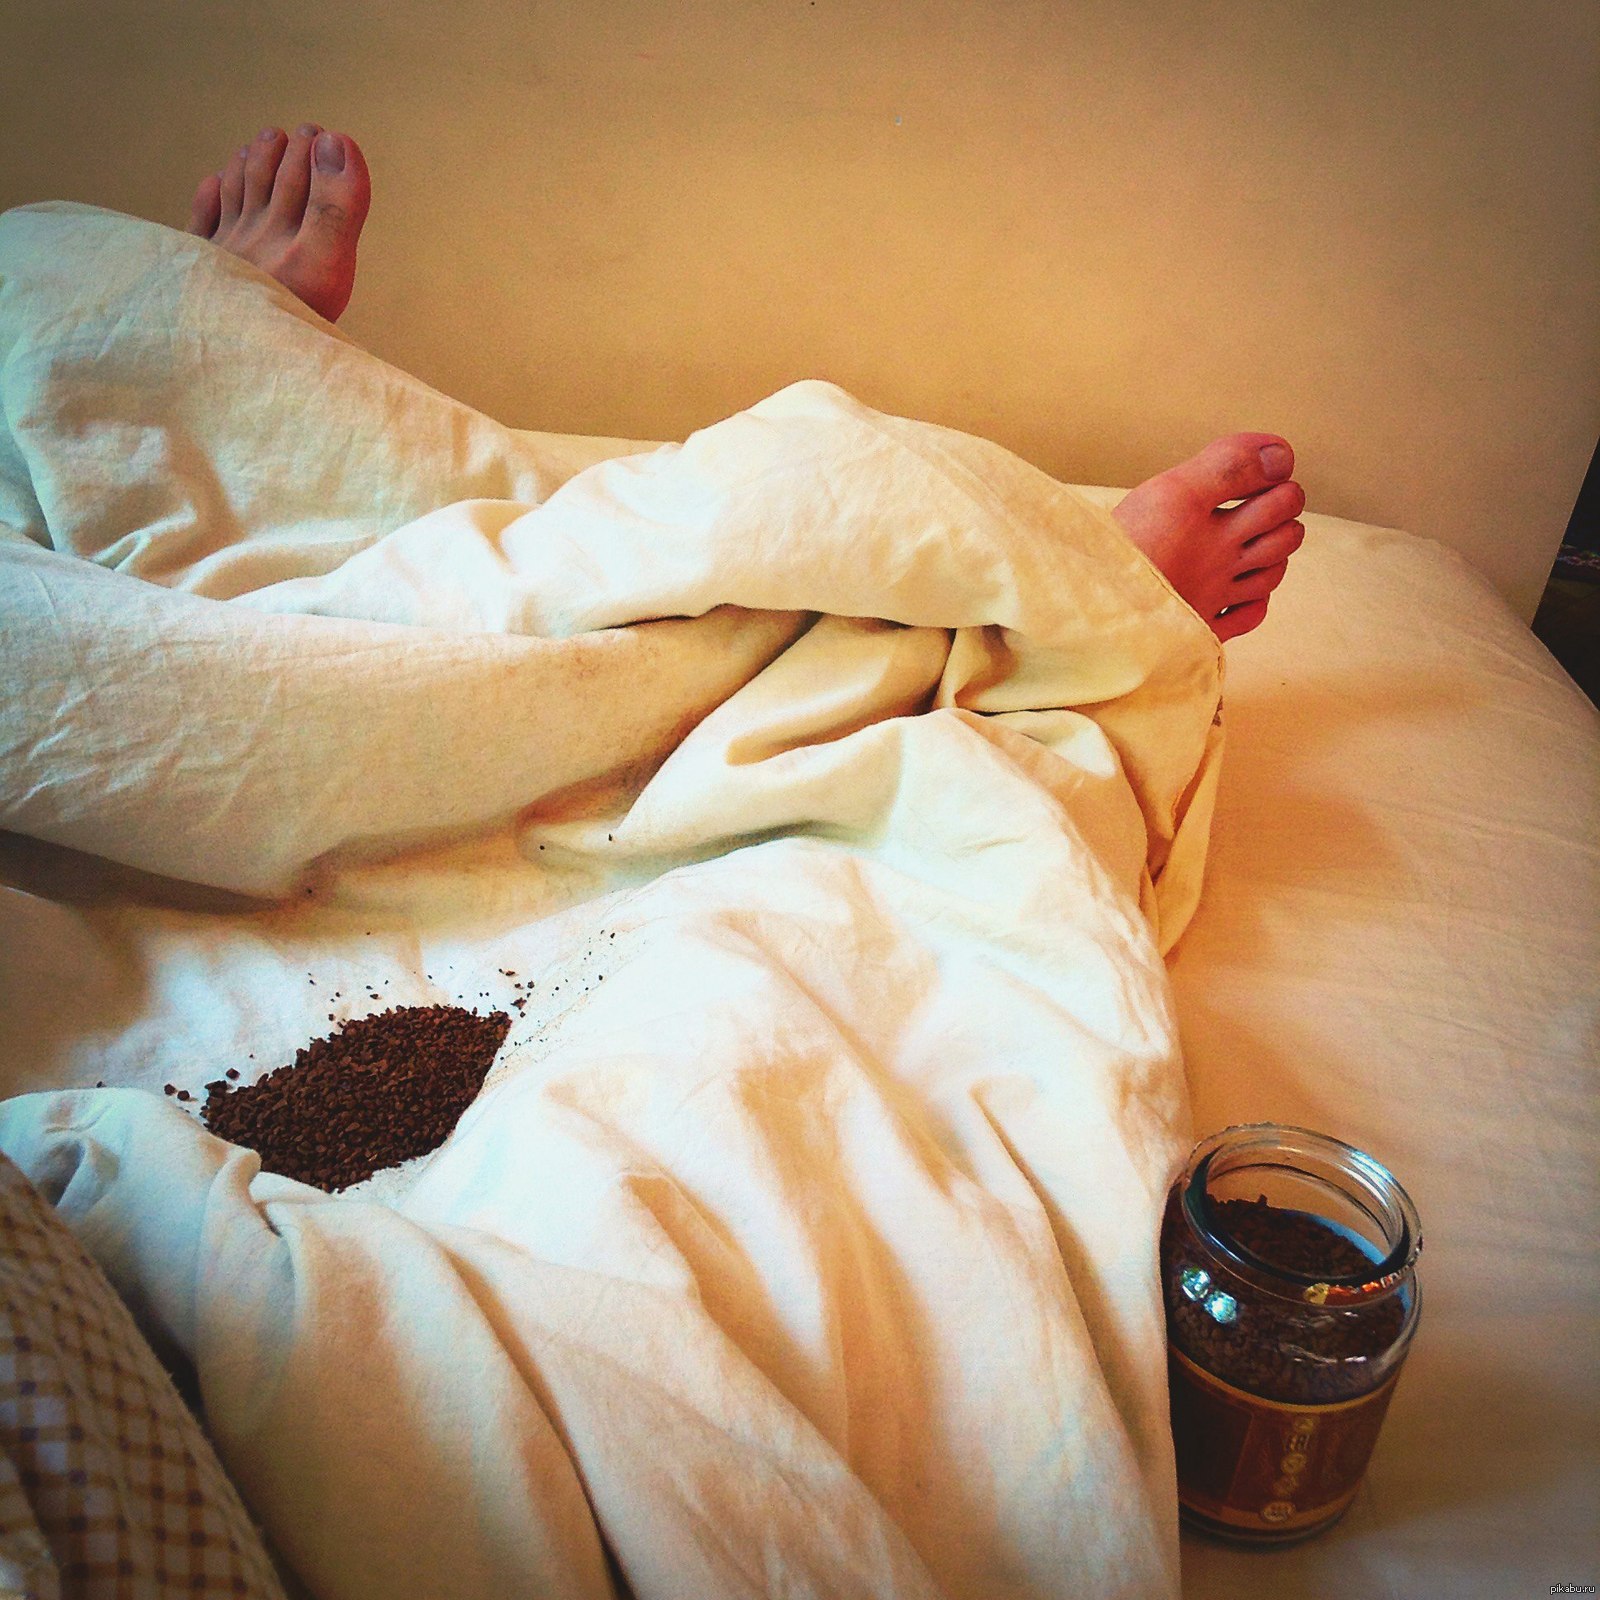 Просто лежу дома. Валяться в кровати. Утренняя фотосессия в постели. Кофе в постель. Селфи в кровати.